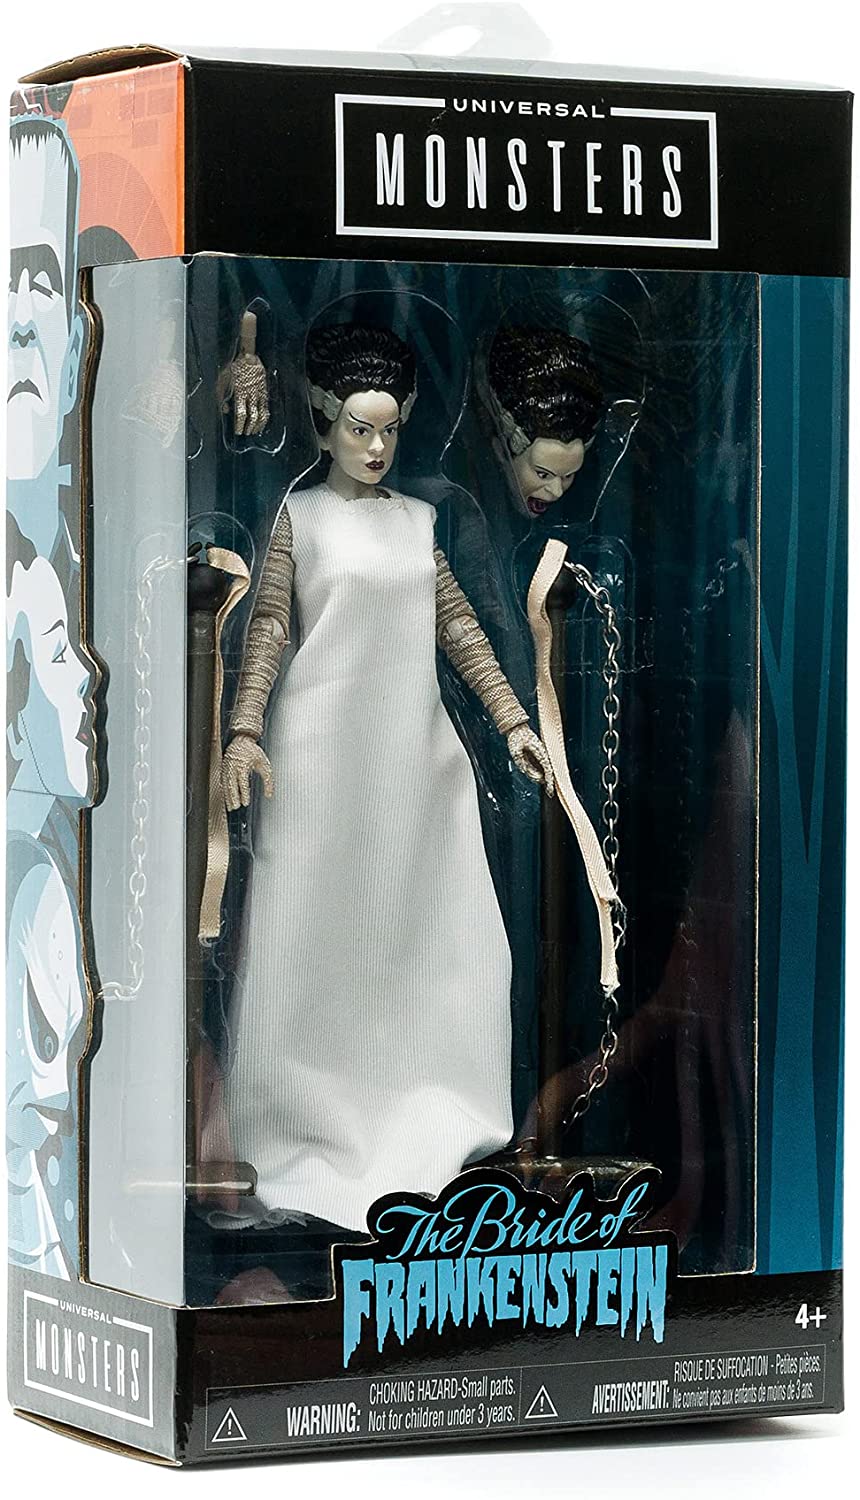 Jada 253251016 Universal Monsters Bride of Frankenstein 6” Deluxe Collector Figure, White